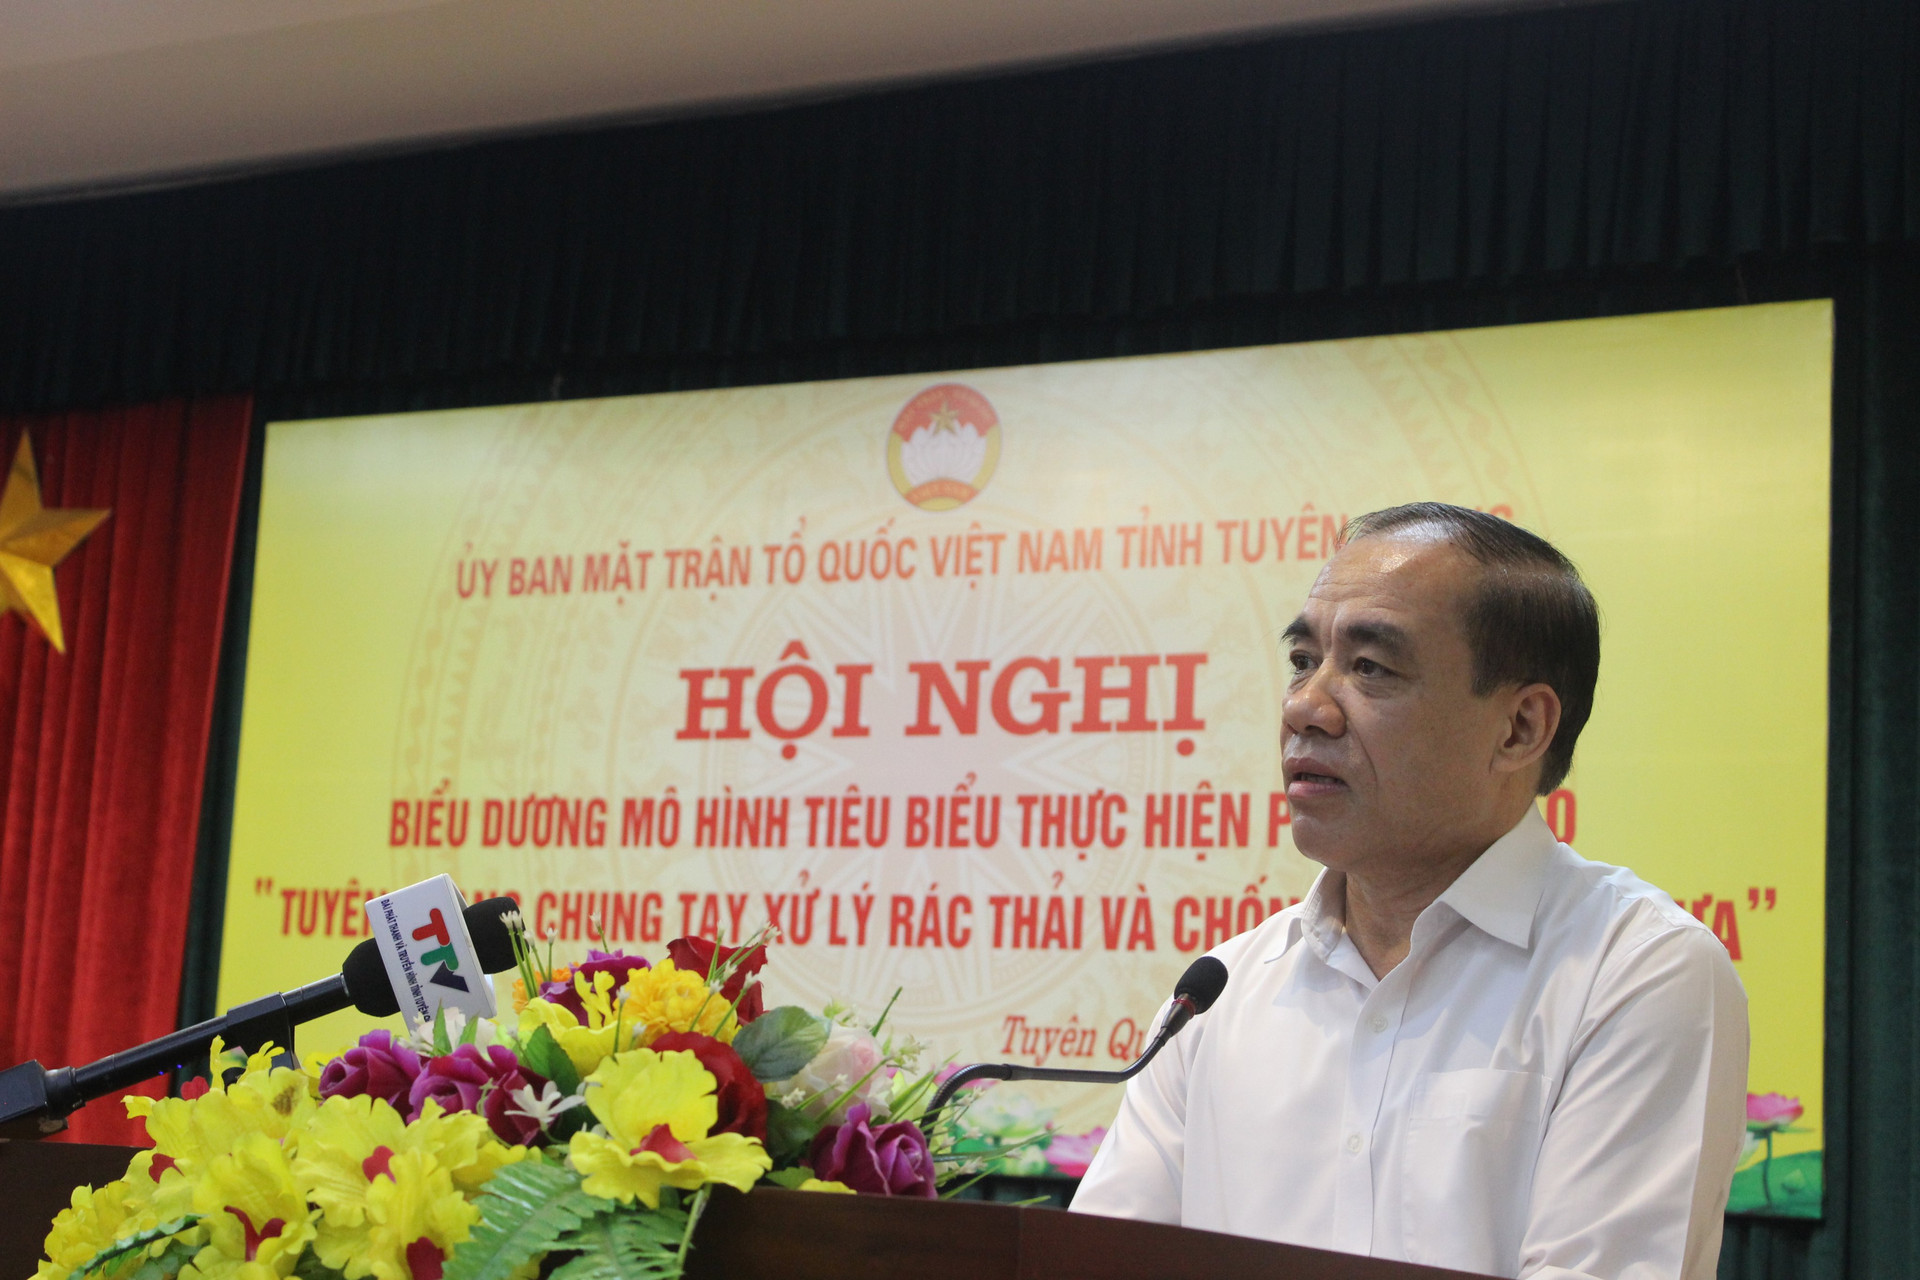 Ông Chẩu Văn Lâm, Ủy viên BCH Trung ương Đảng, Bí thư Tỉnh ủy, Trưởng Đoàn đại biểu Quốc hội tỉnh Tuyên Quang phát biểu chỉ đạo tại hội nghị.